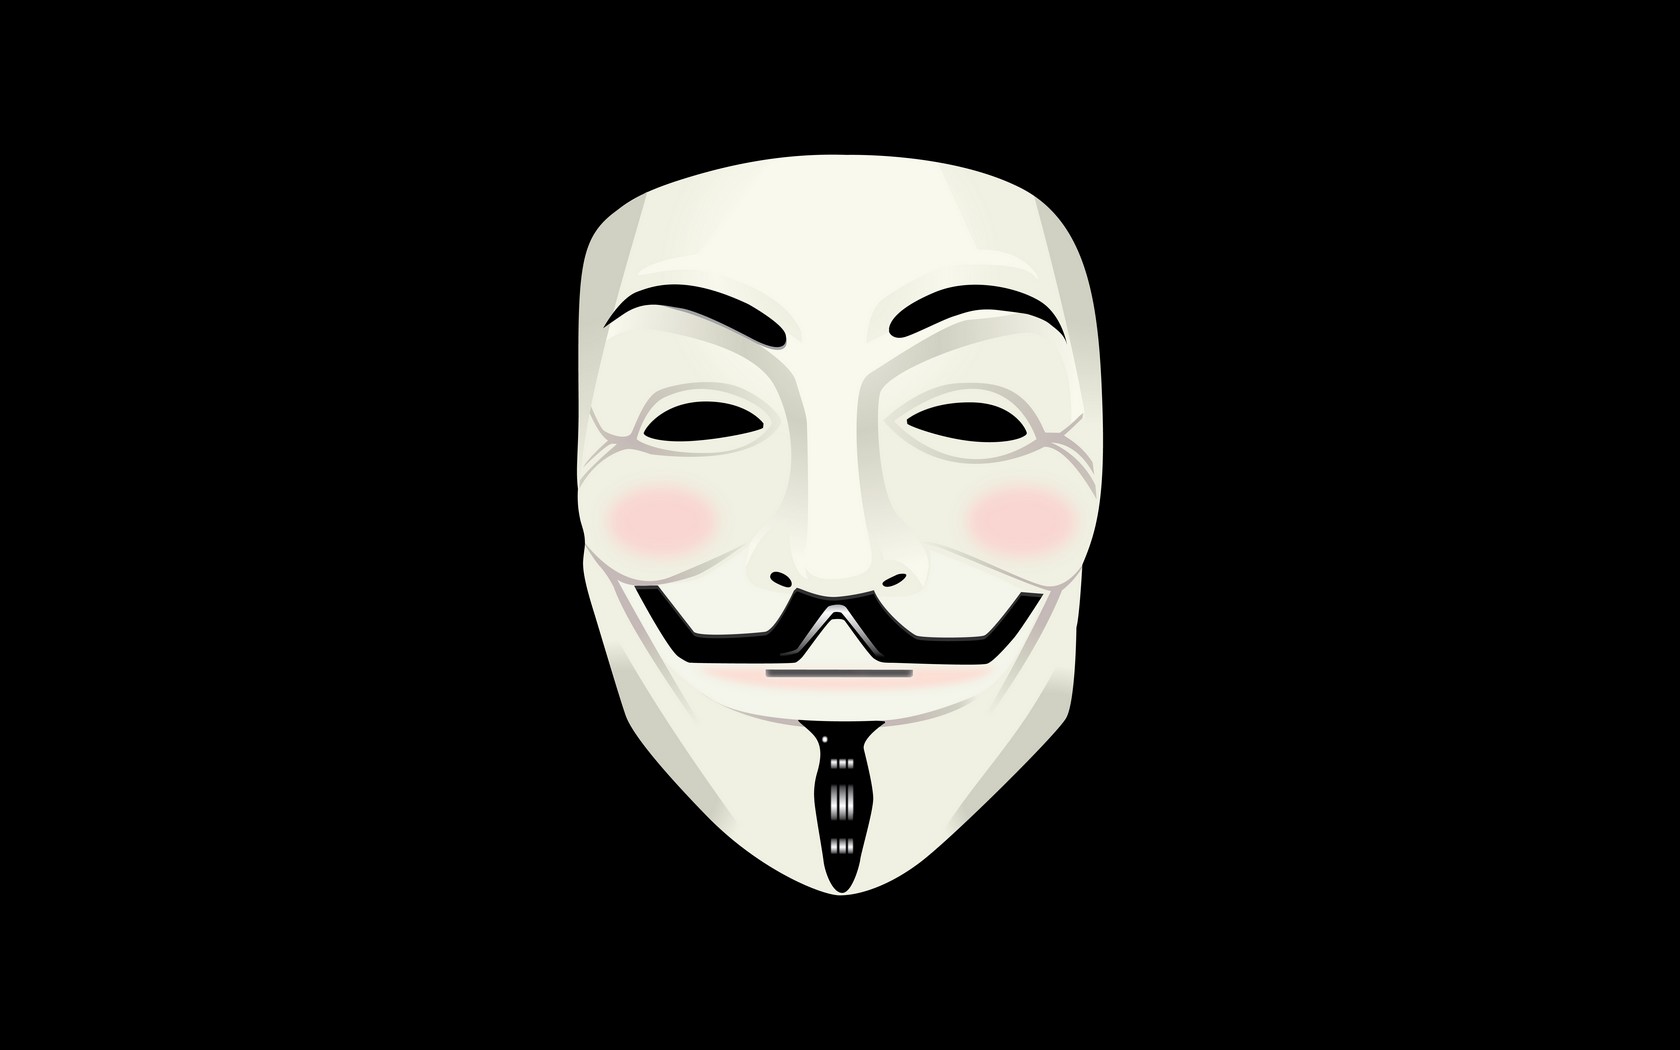 General 1680x1050 V for Vendetta mask Guy Fawkes mask